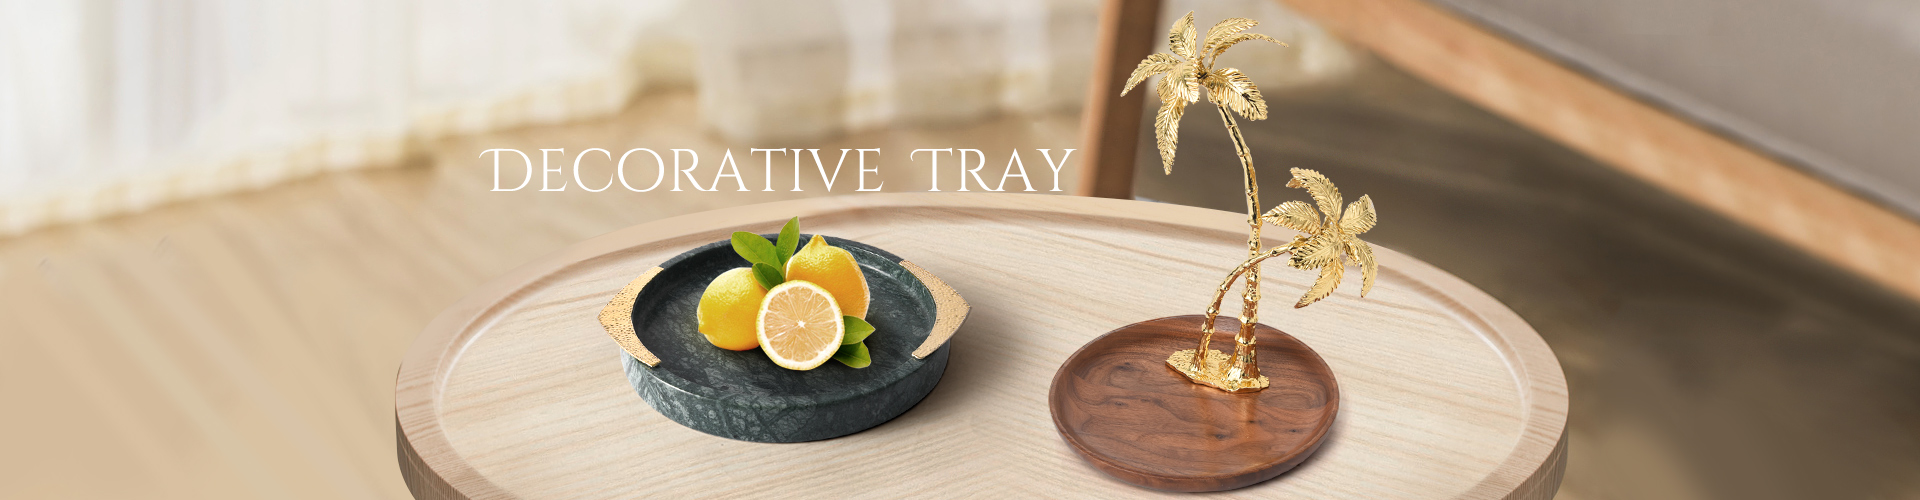 decorative-tray